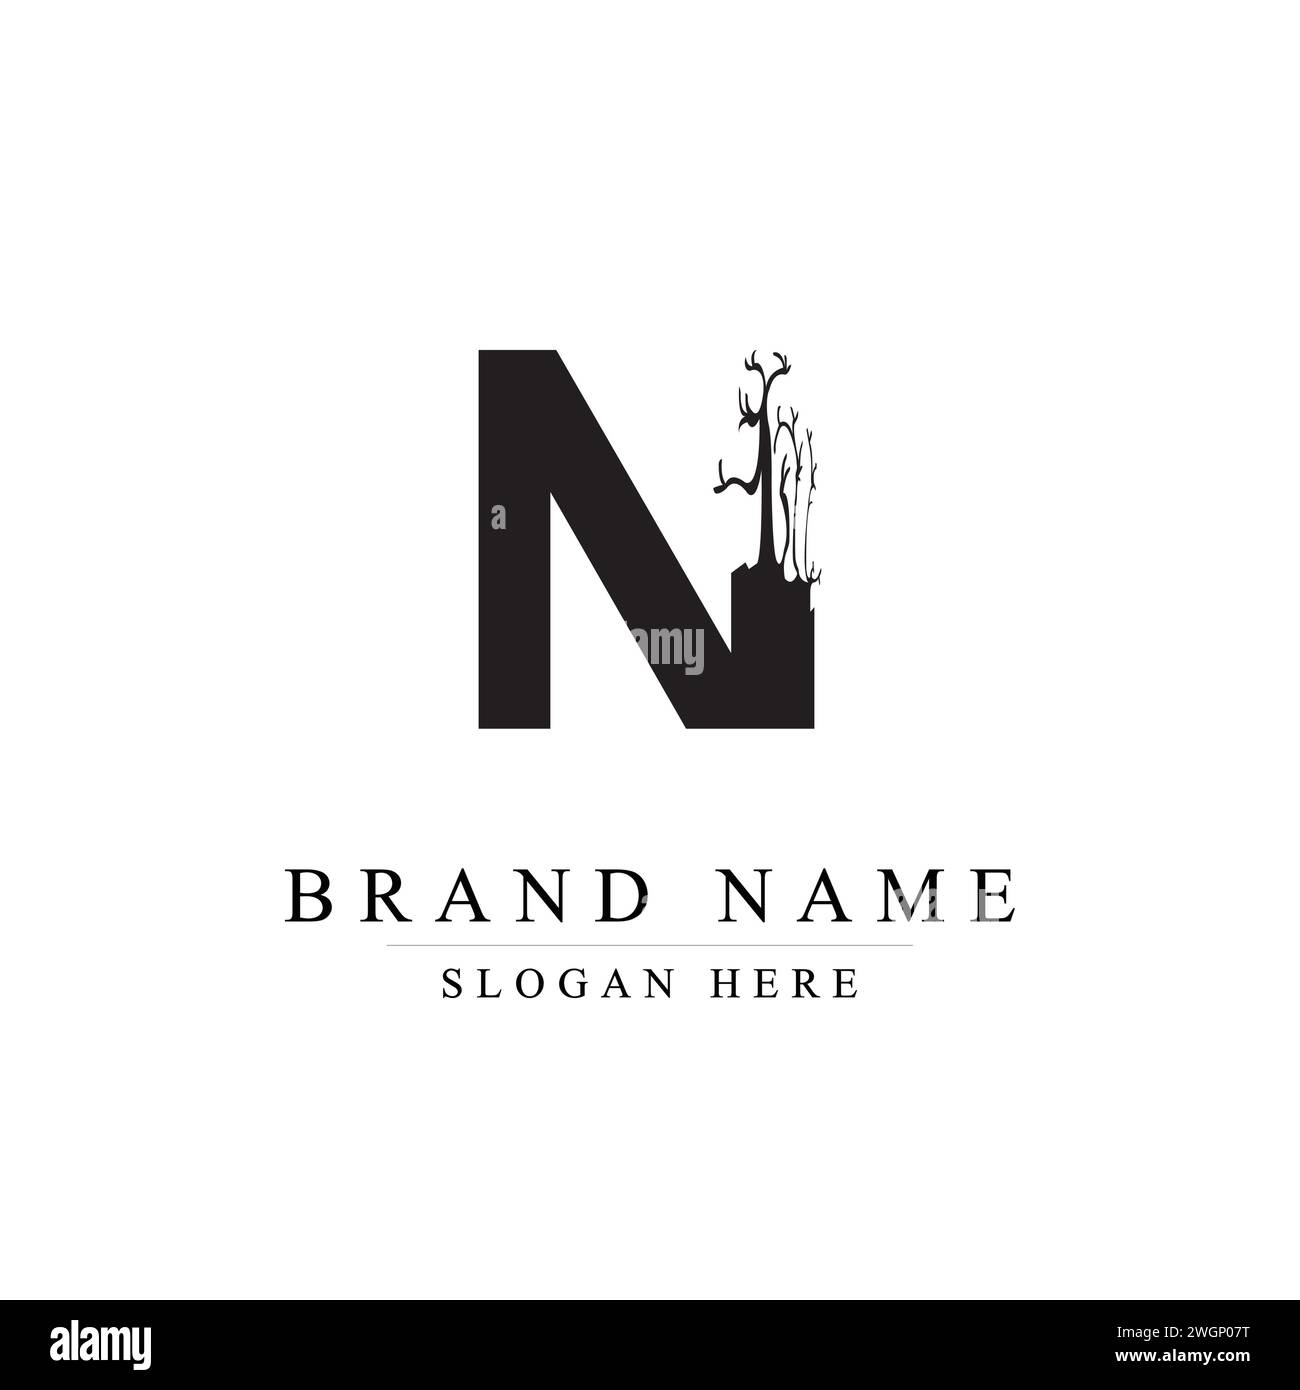 Das vom Baum inspirierte N-Logo für Premium-Marken, das vom Baum inspirierte N-Logo für Premium-Marken Stock Vektor